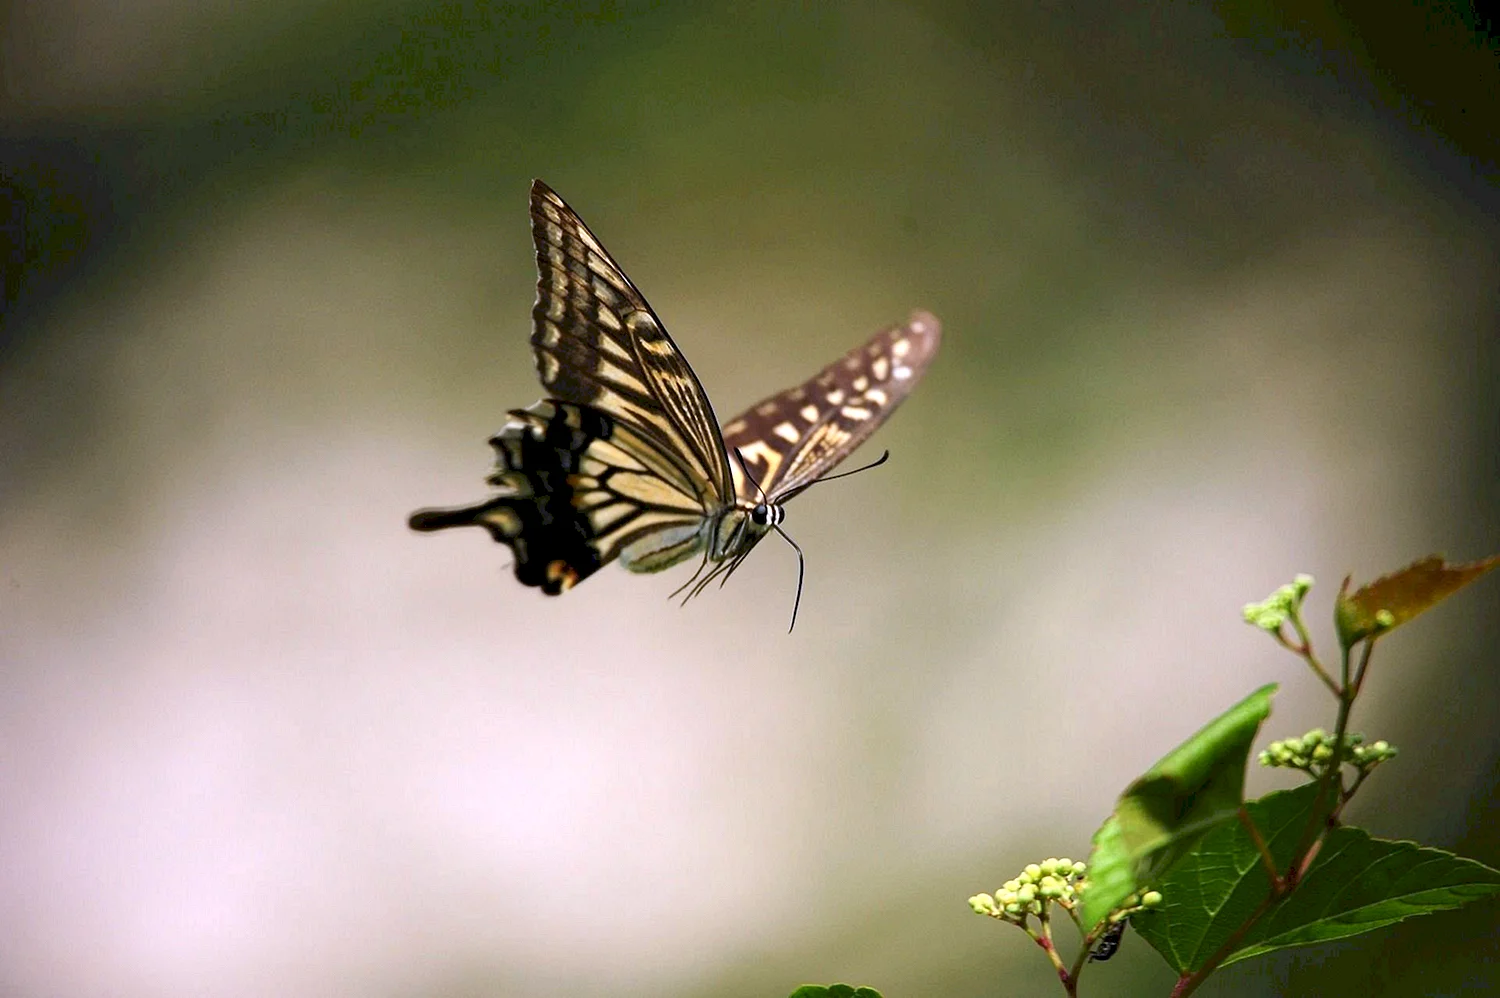 Тихо бабочки летают. Бабочка в полете. Полет бабочки. Порхающие бабочки. Красивая бабочка в полете.